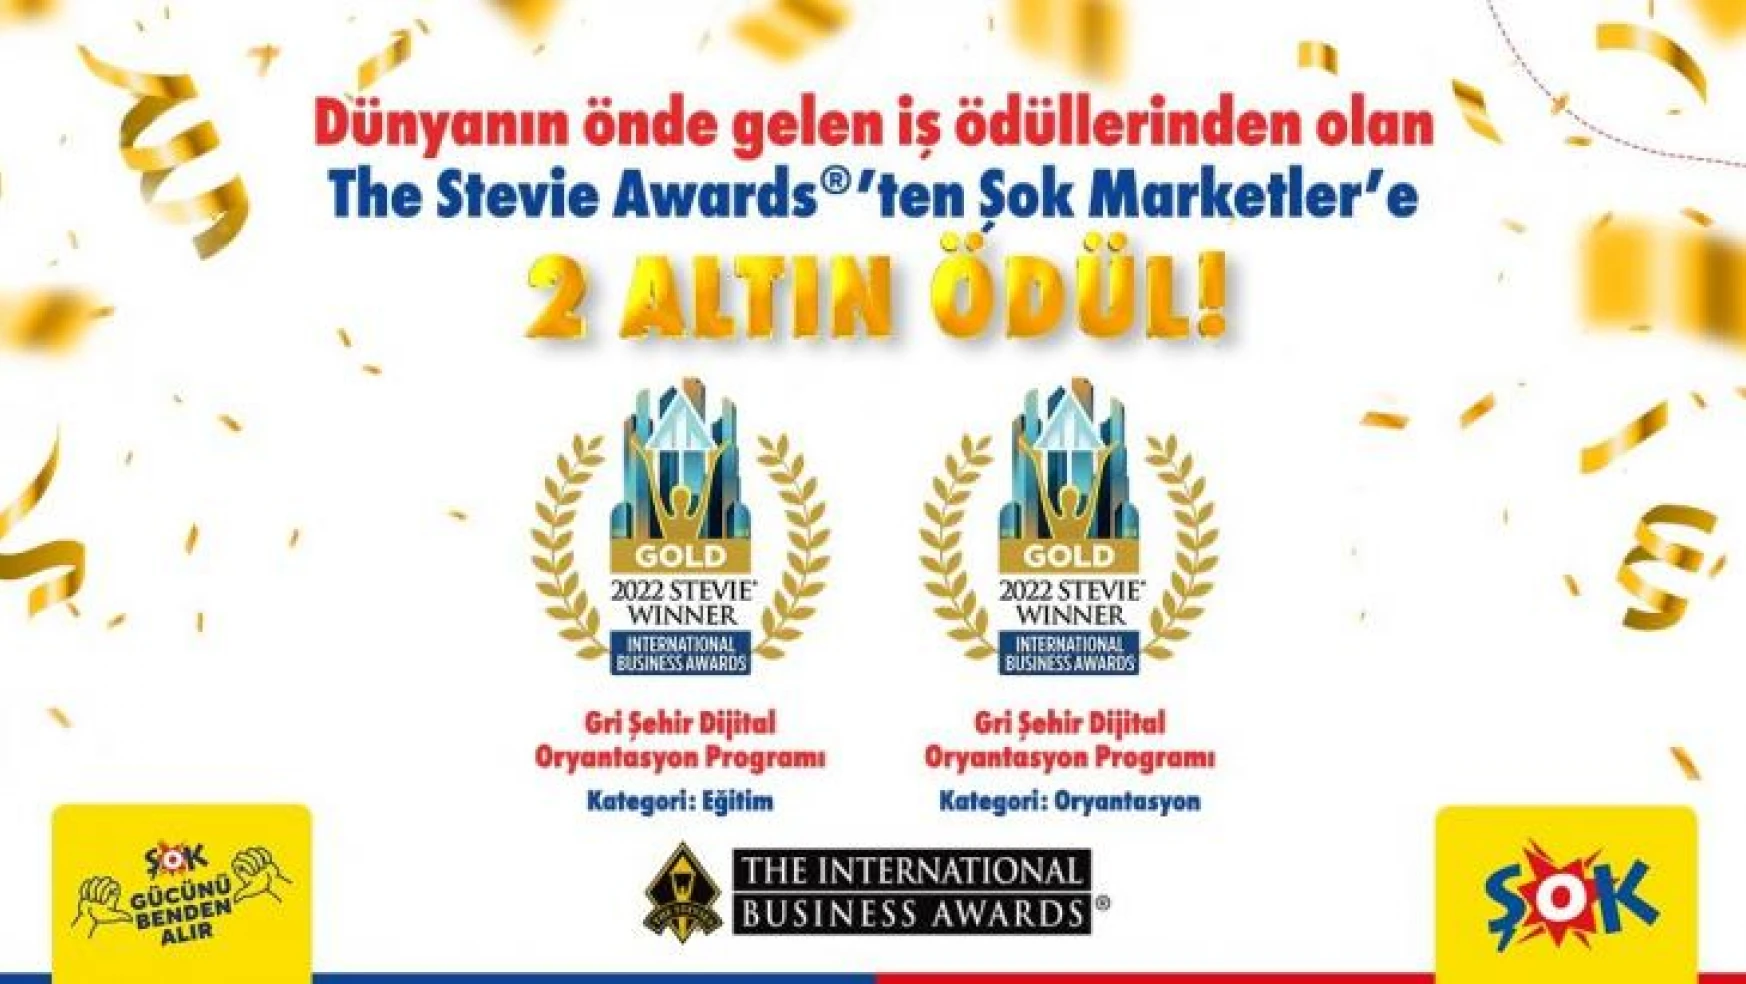 ŞOK Marketler, Uluslararası İş Ödülleri Stevie Awards'tan 2 altın ödül kazandı